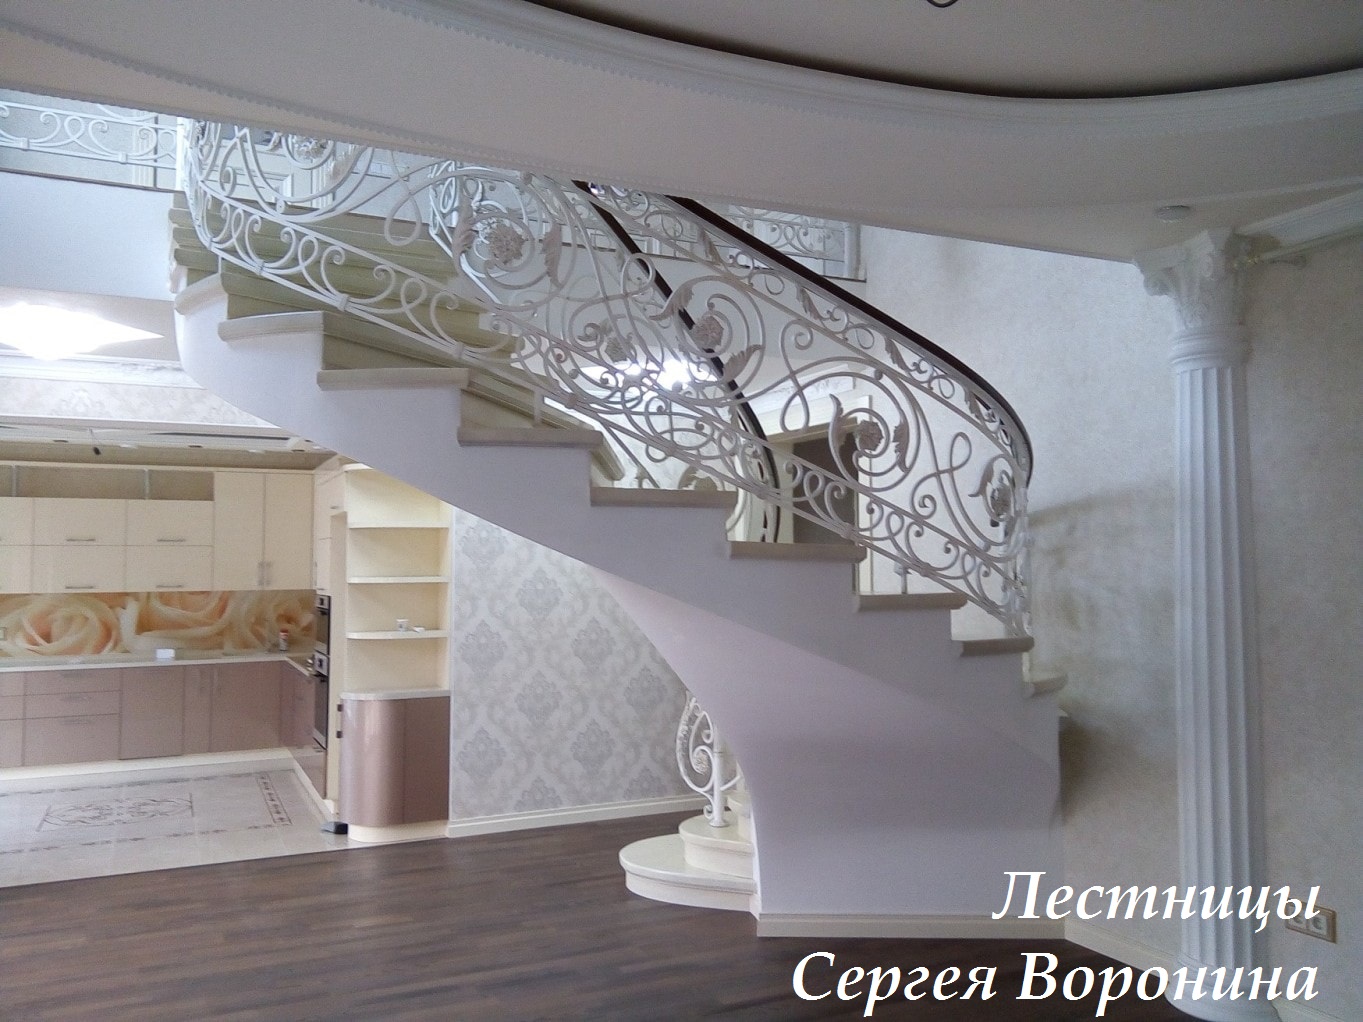 Лестница в частном доме бетонная, 2018 год, автор Сергей Воронин, Воронеж